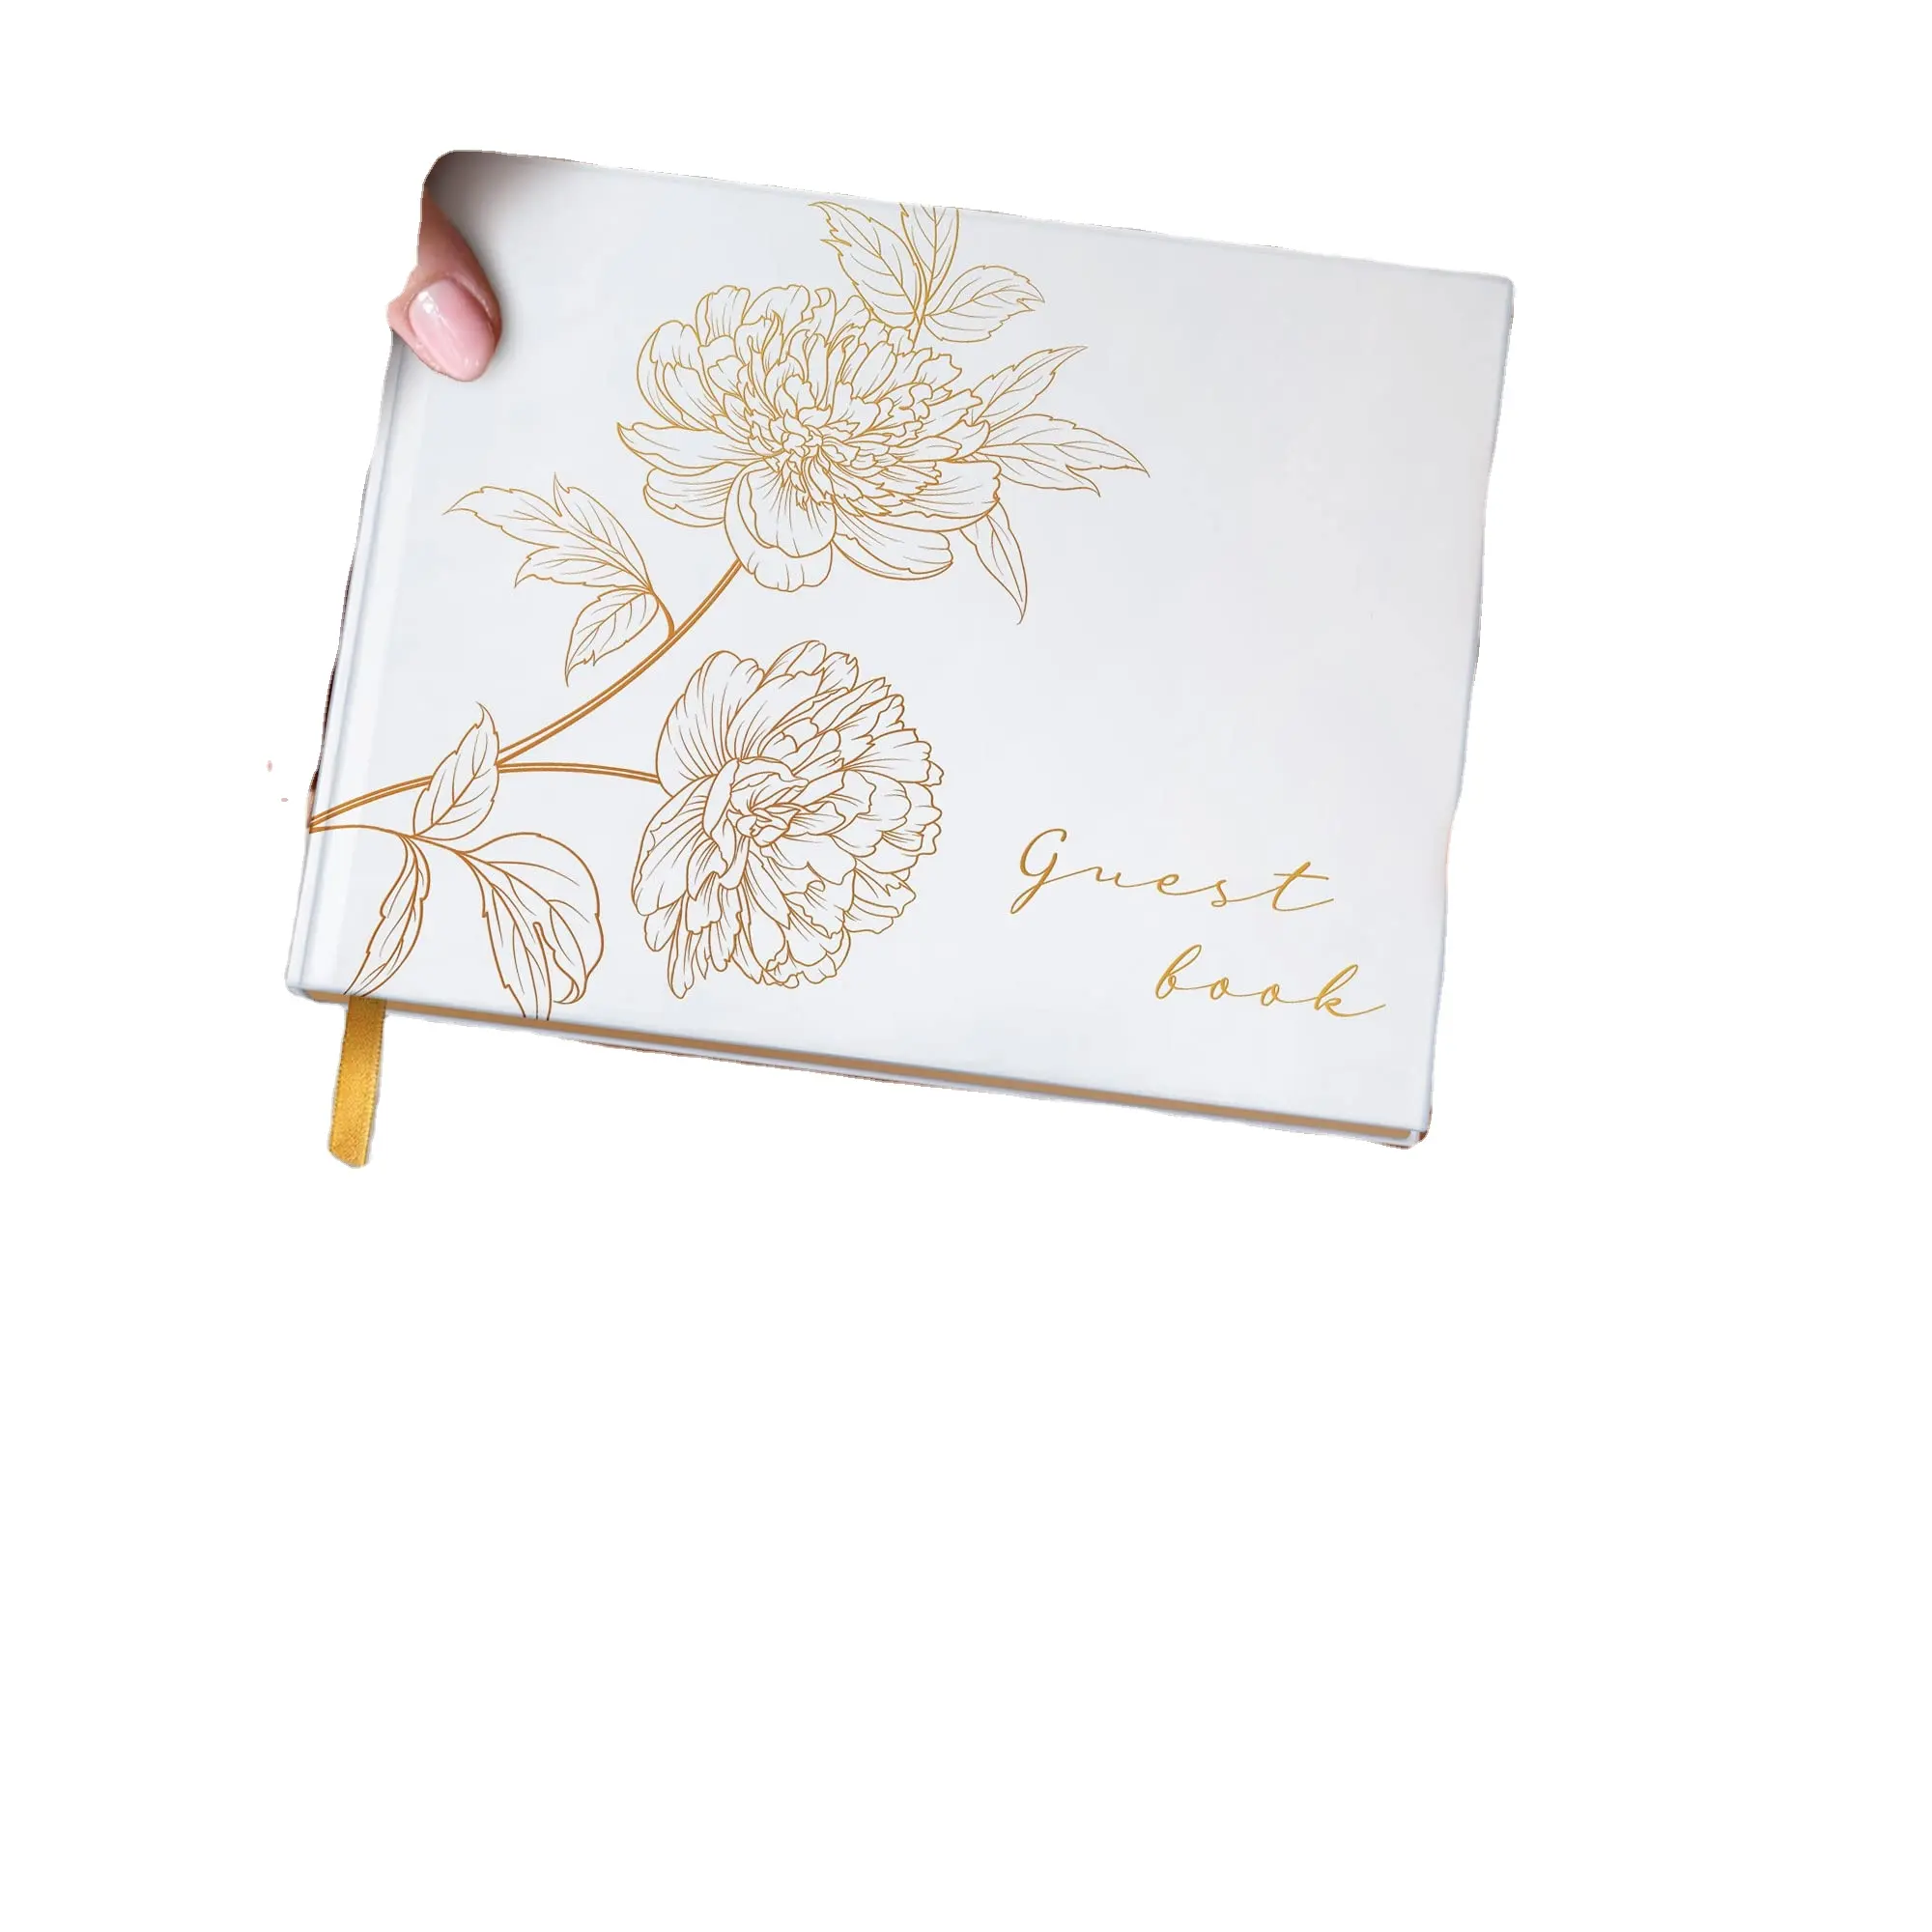 Myway fabrika toptan özel altın damgalı düğün ziyaretçi defteri çiçek tasarım ile kalem